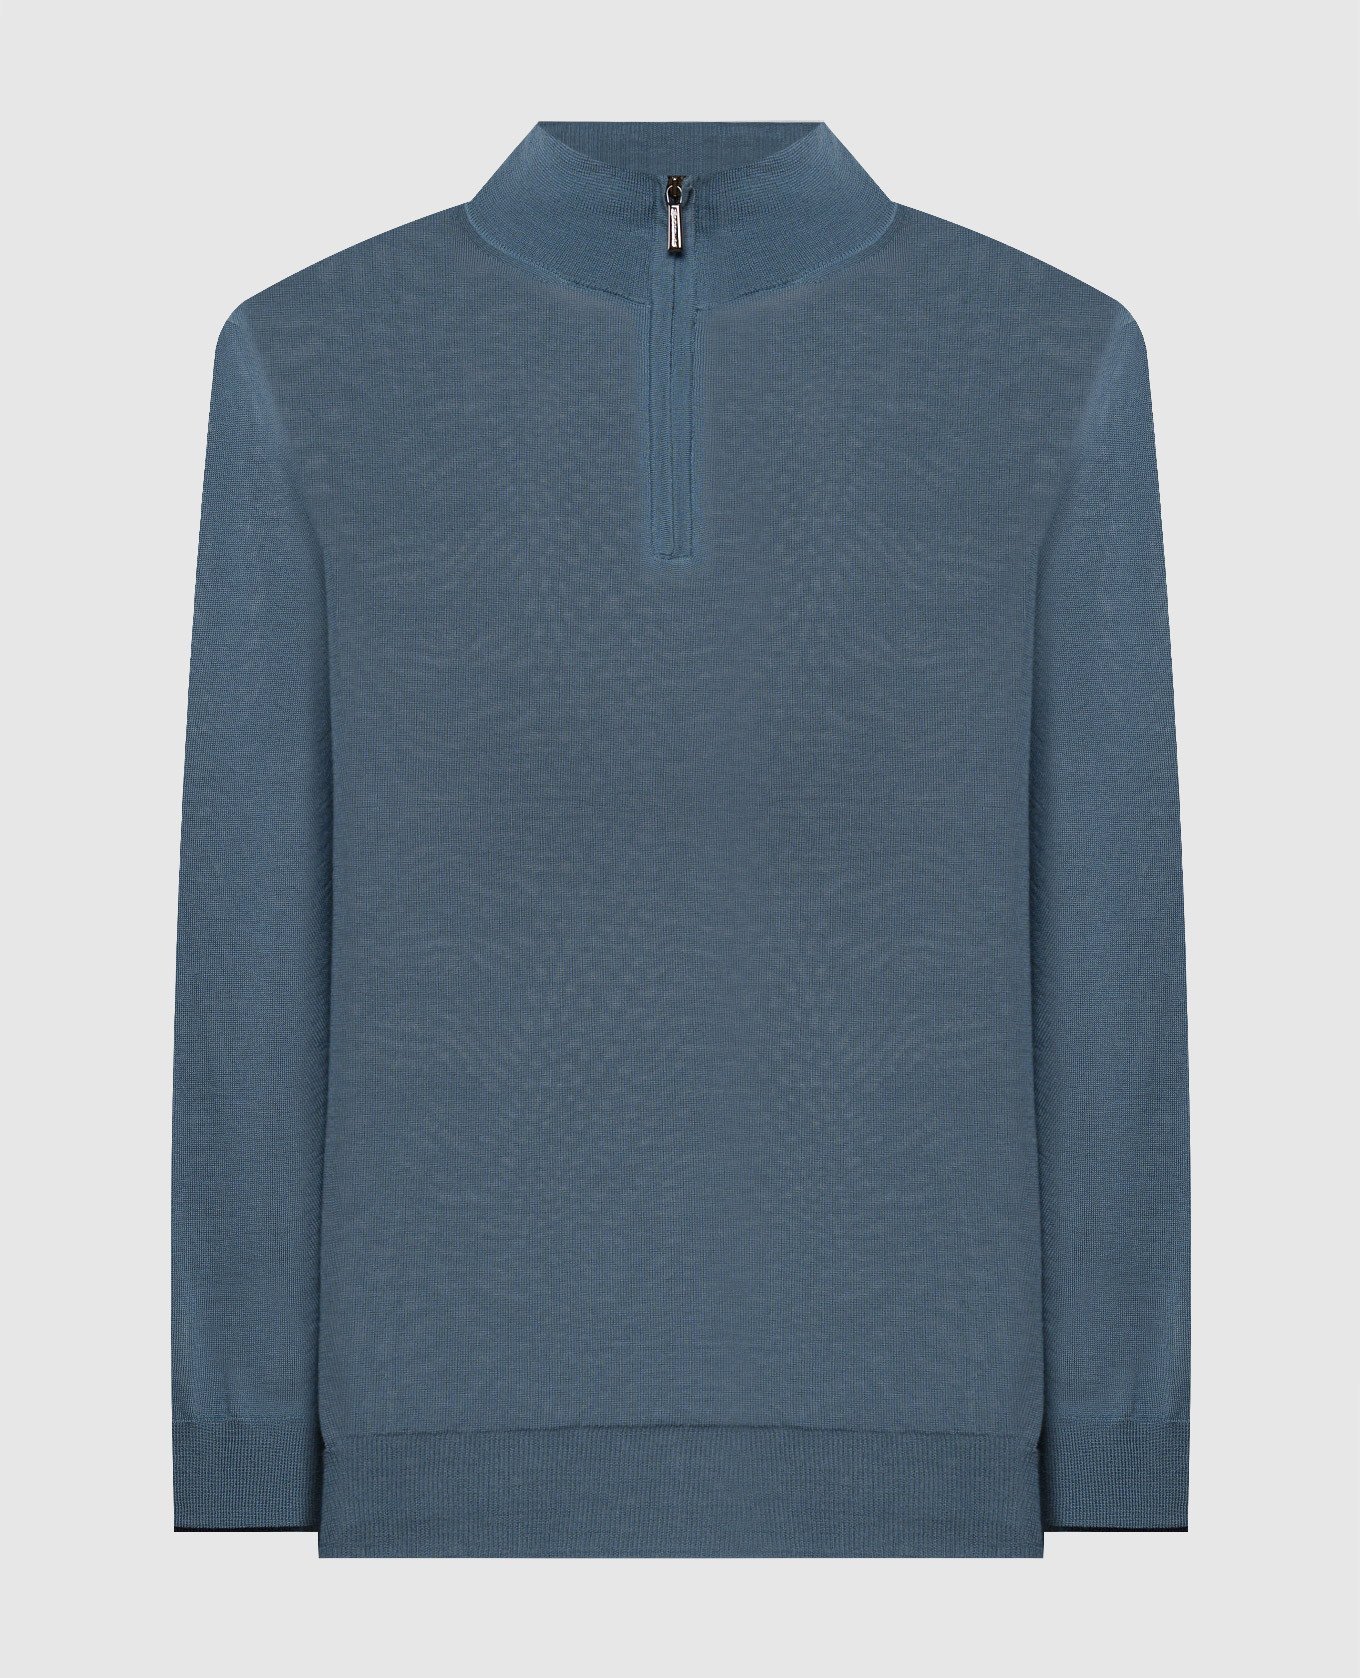 TERNIMLL blue wool jumper